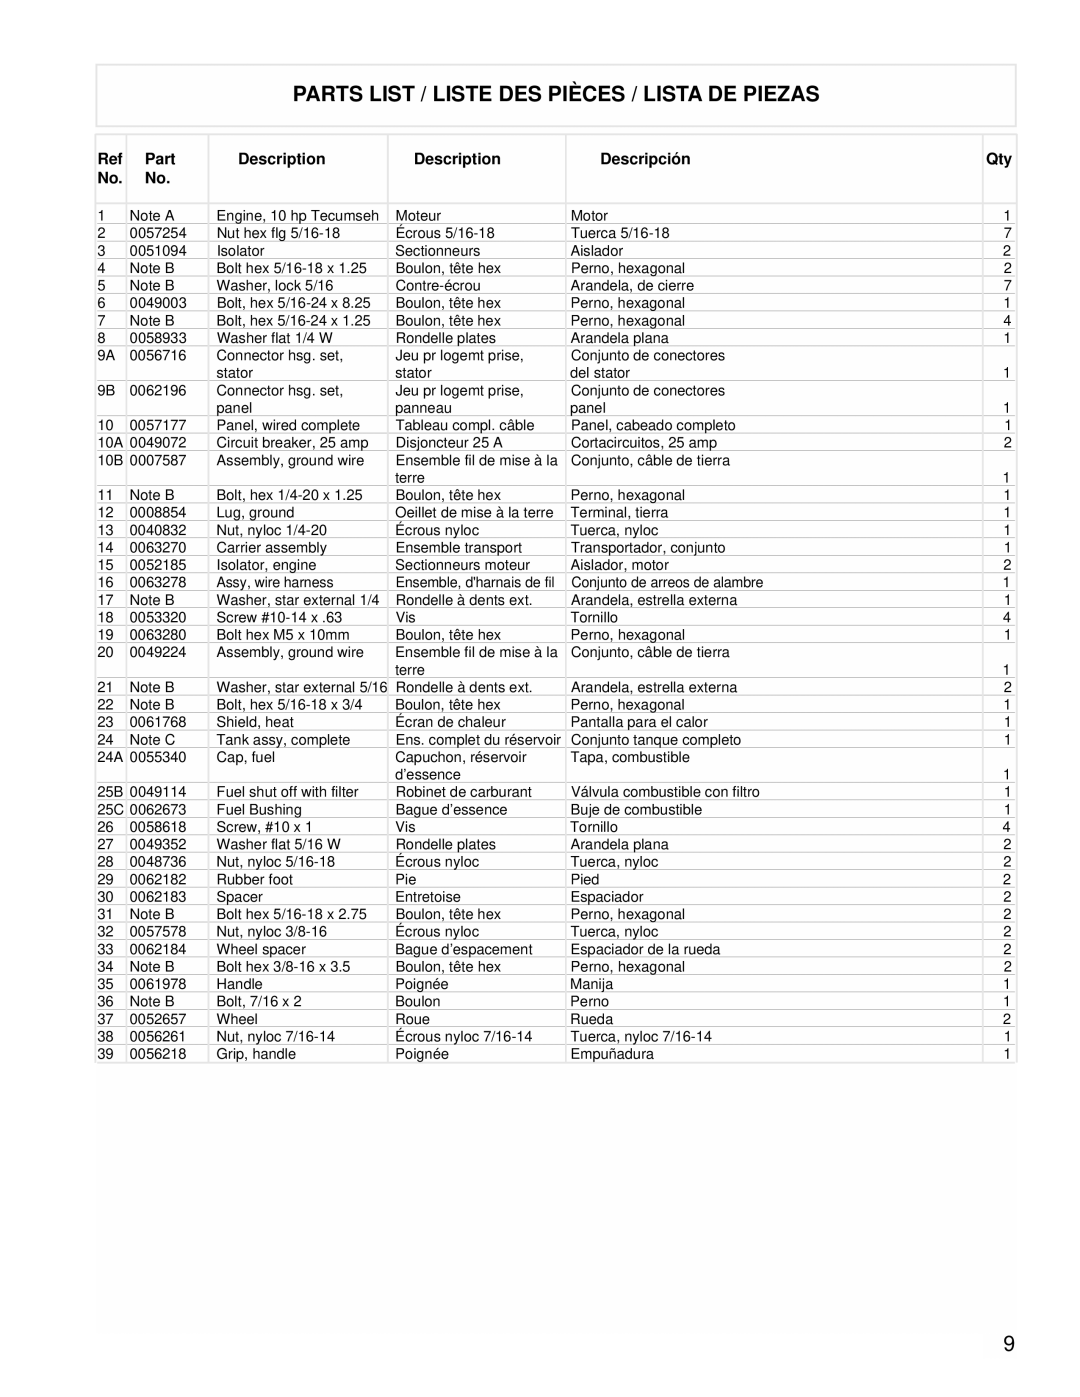 Powermate PM0525312.02 manual Parts List / Liste Des Pièces / Lista De Piezas, Description, Descripción 